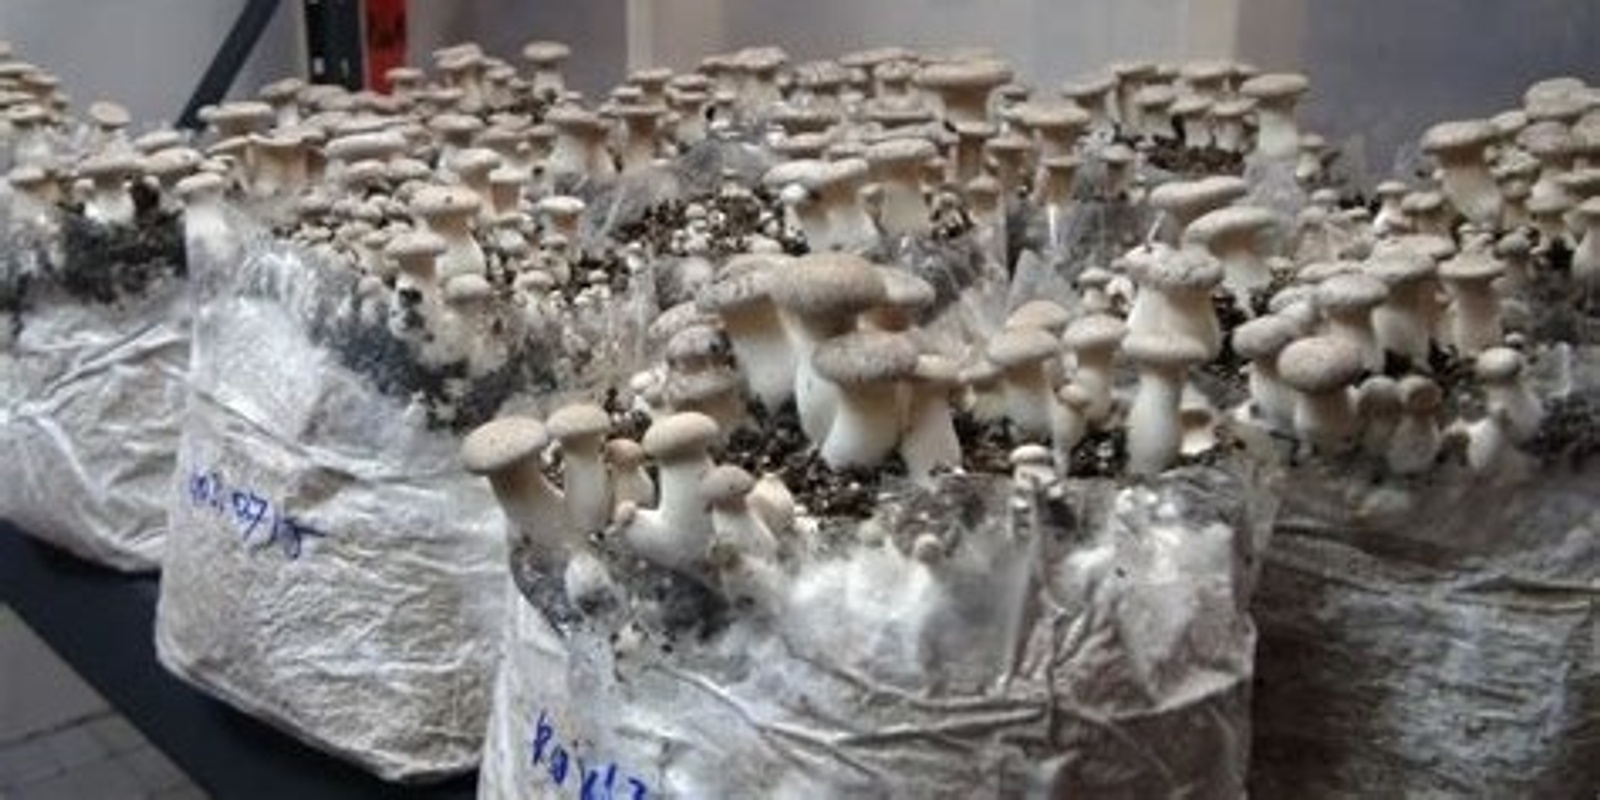 Growing Mushrooms